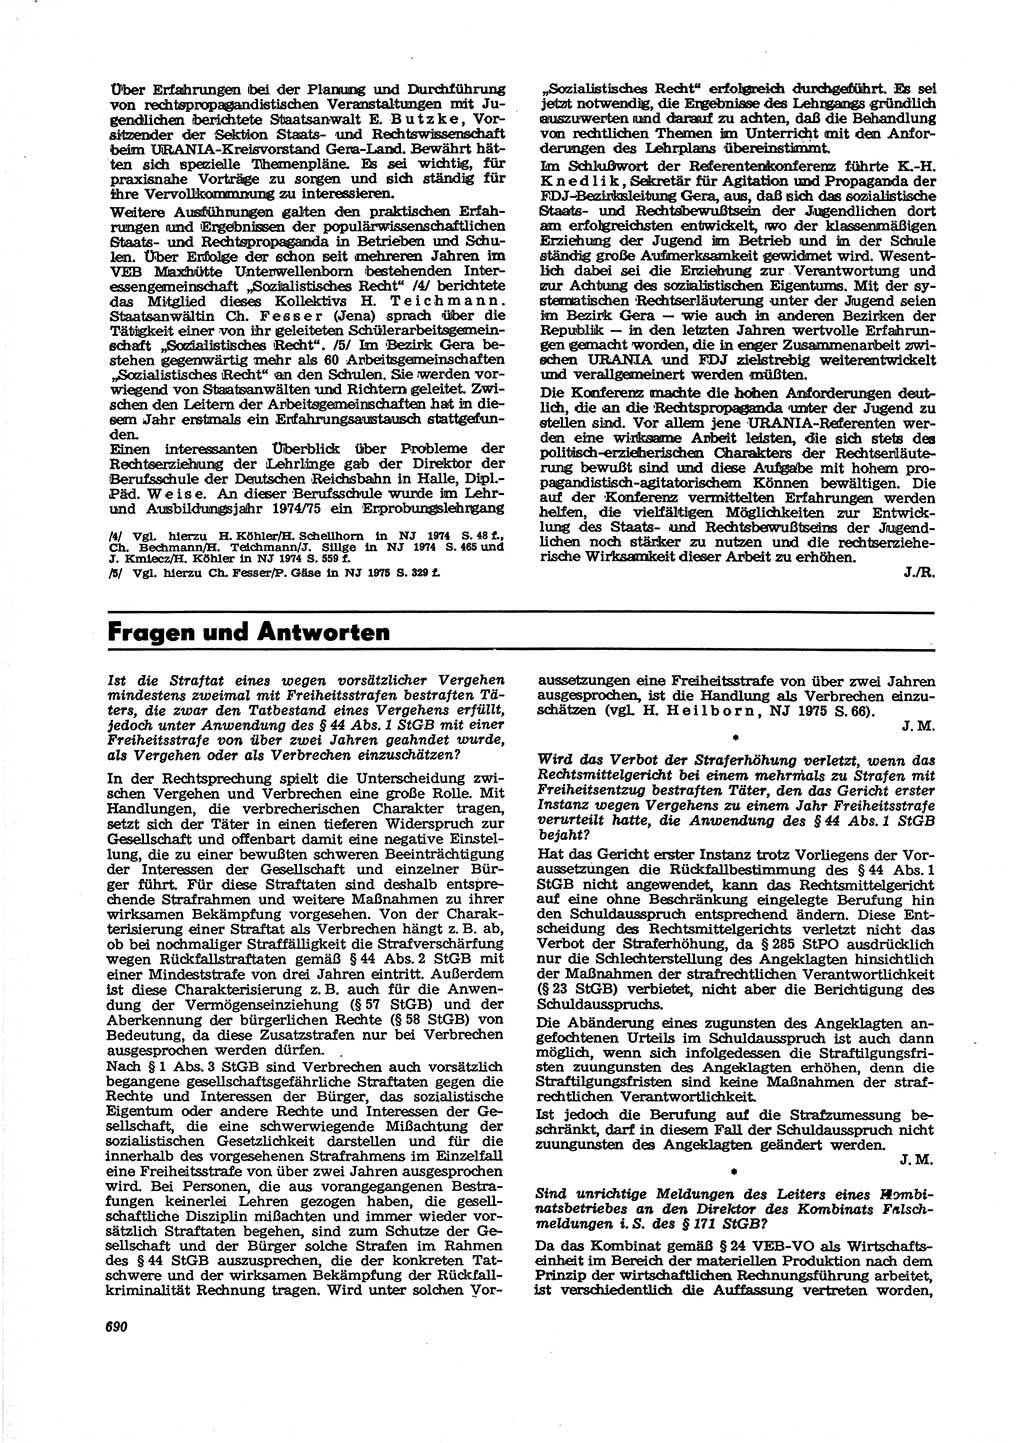 Neue Justiz (NJ), Zeitschrift für Recht und Rechtswissenschaft [Deutsche Demokratische Republik (DDR)], 29. Jahrgang 1975, Seite 690 (NJ DDR 1975, S. 690)